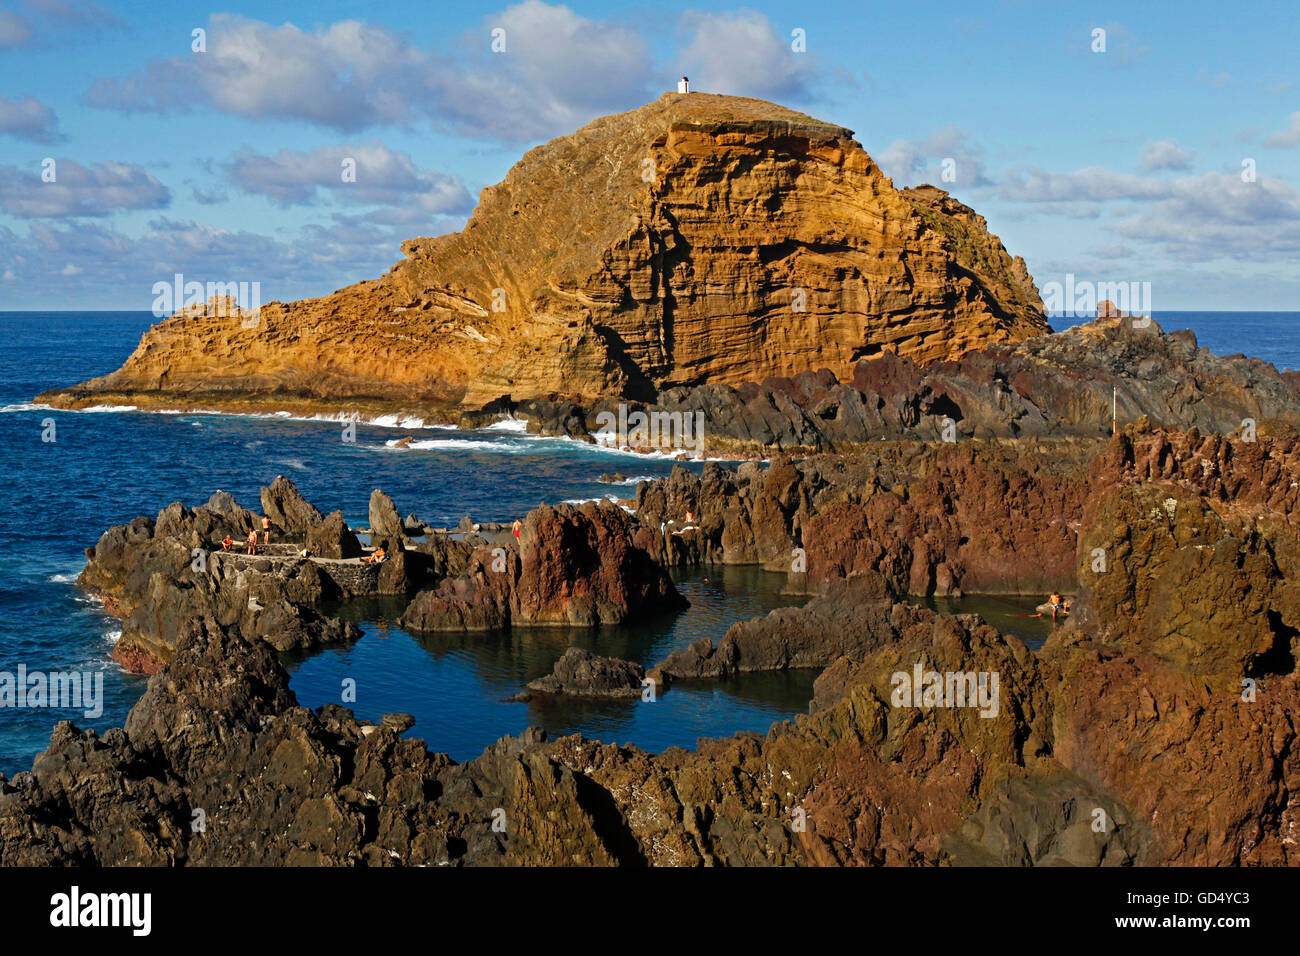 Bassins de lave, côte rocheuse, l'Atlantique, Porto Moniz, île de Madère, Portugal Banque D'Images